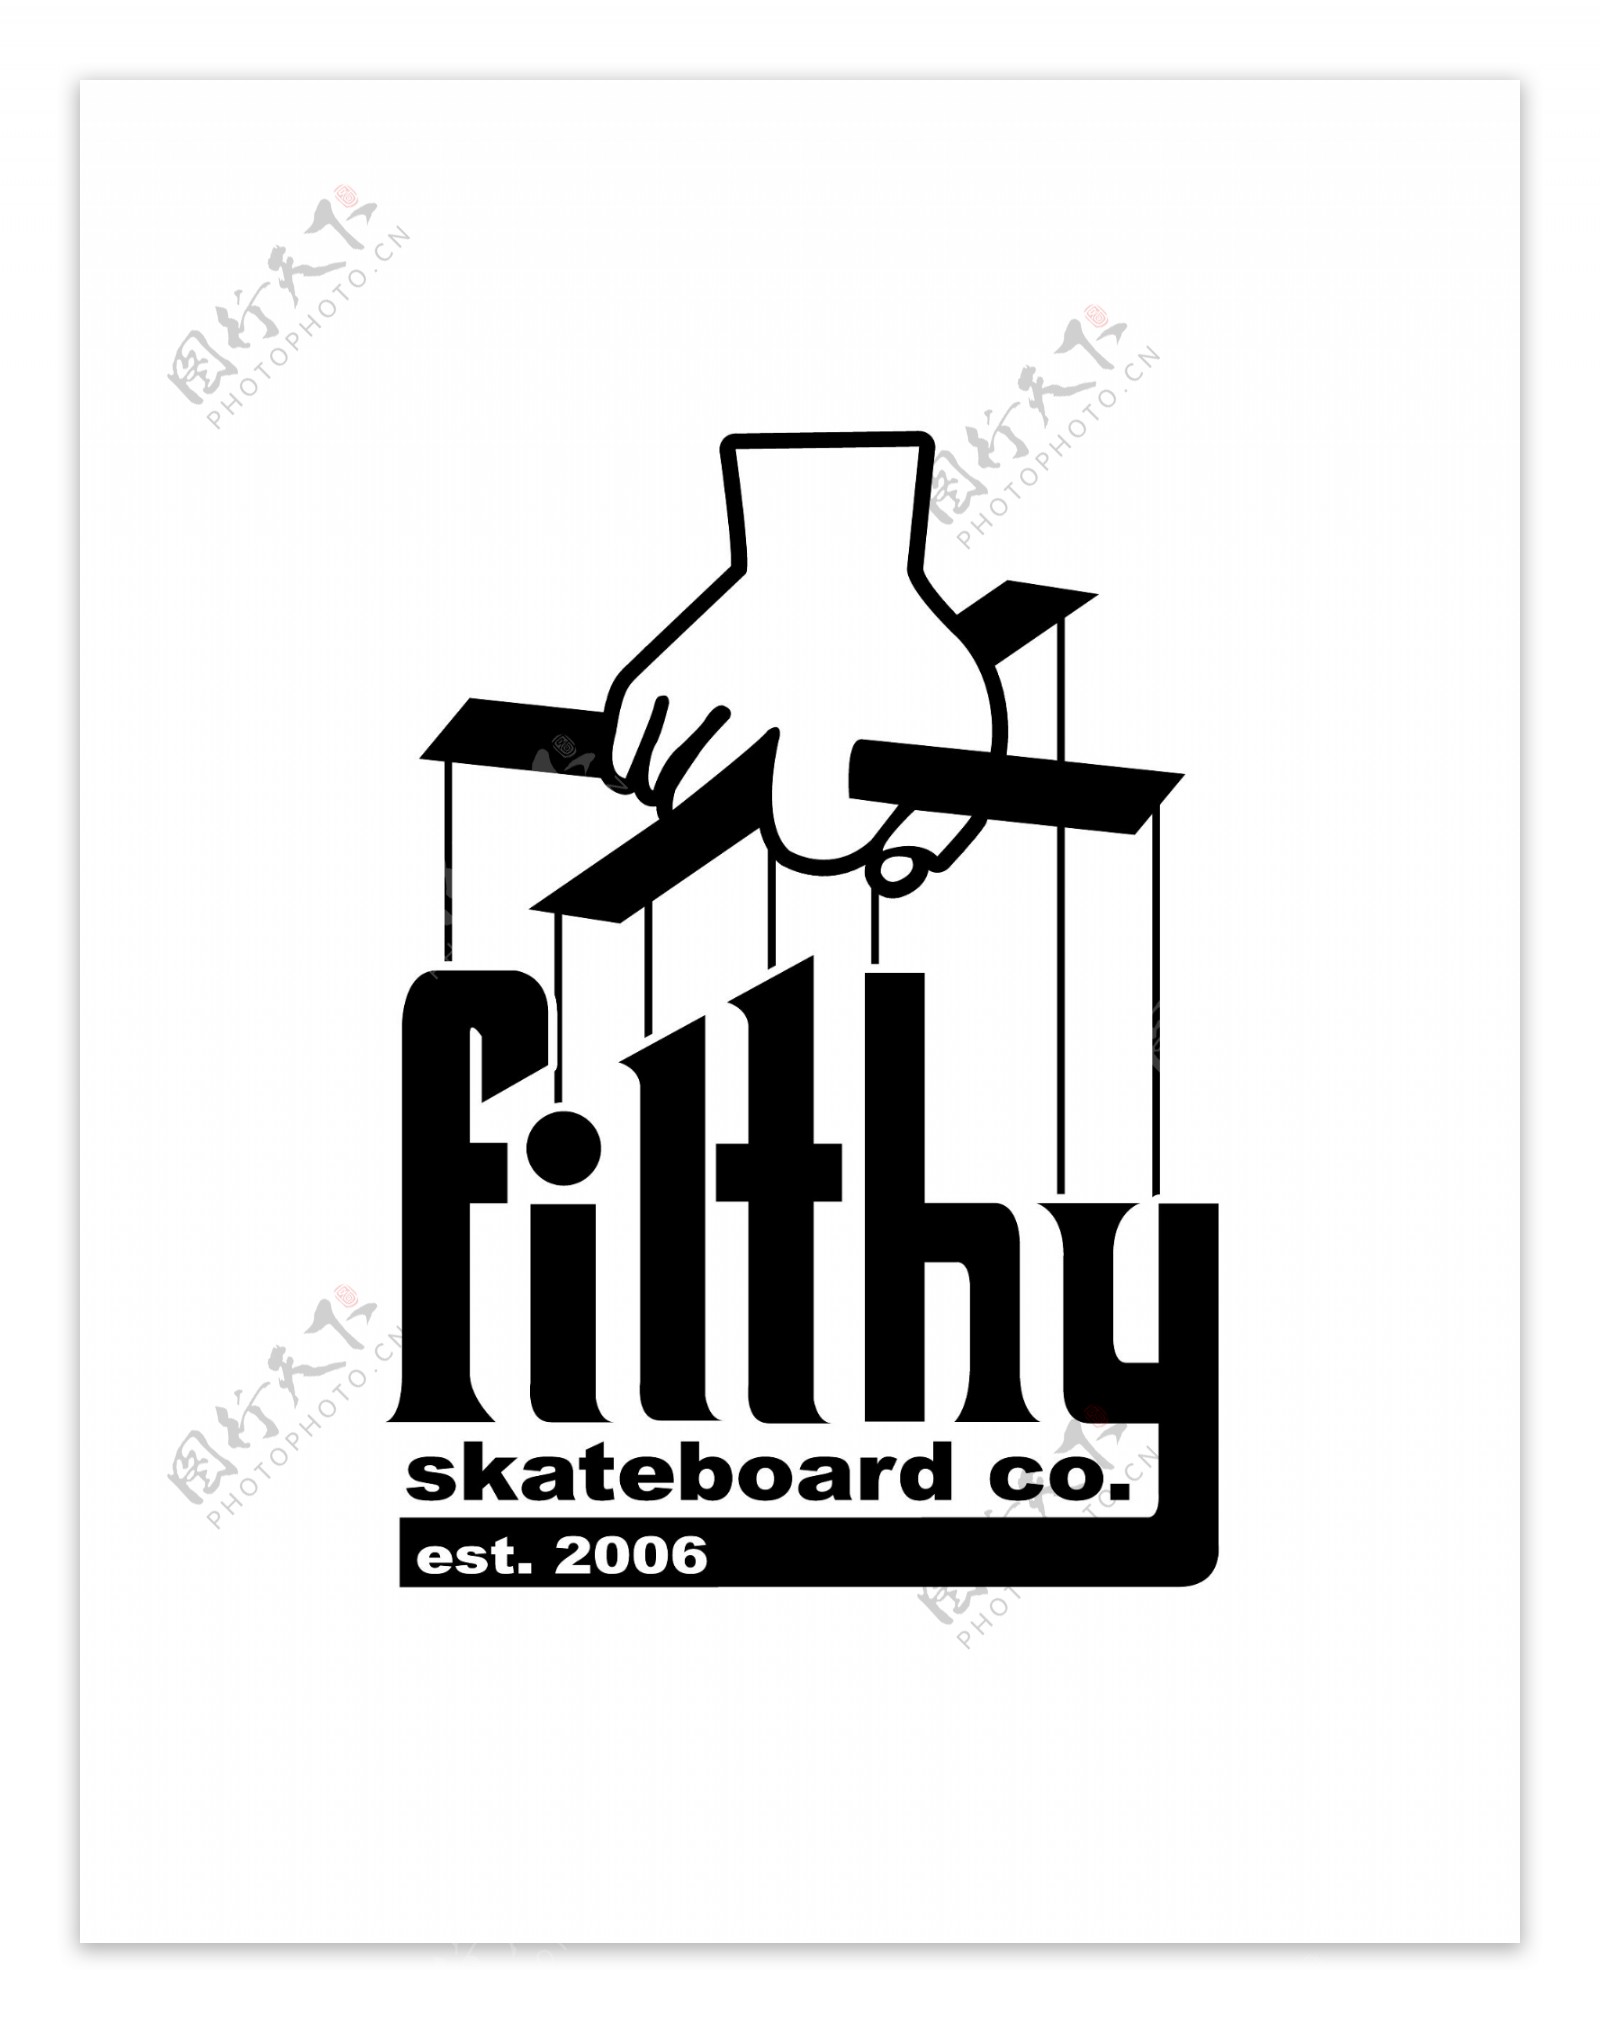 FilthySkateboardCologo设计欣赏FilthySkateboardCo体育赛事标志下载标志设计欣赏